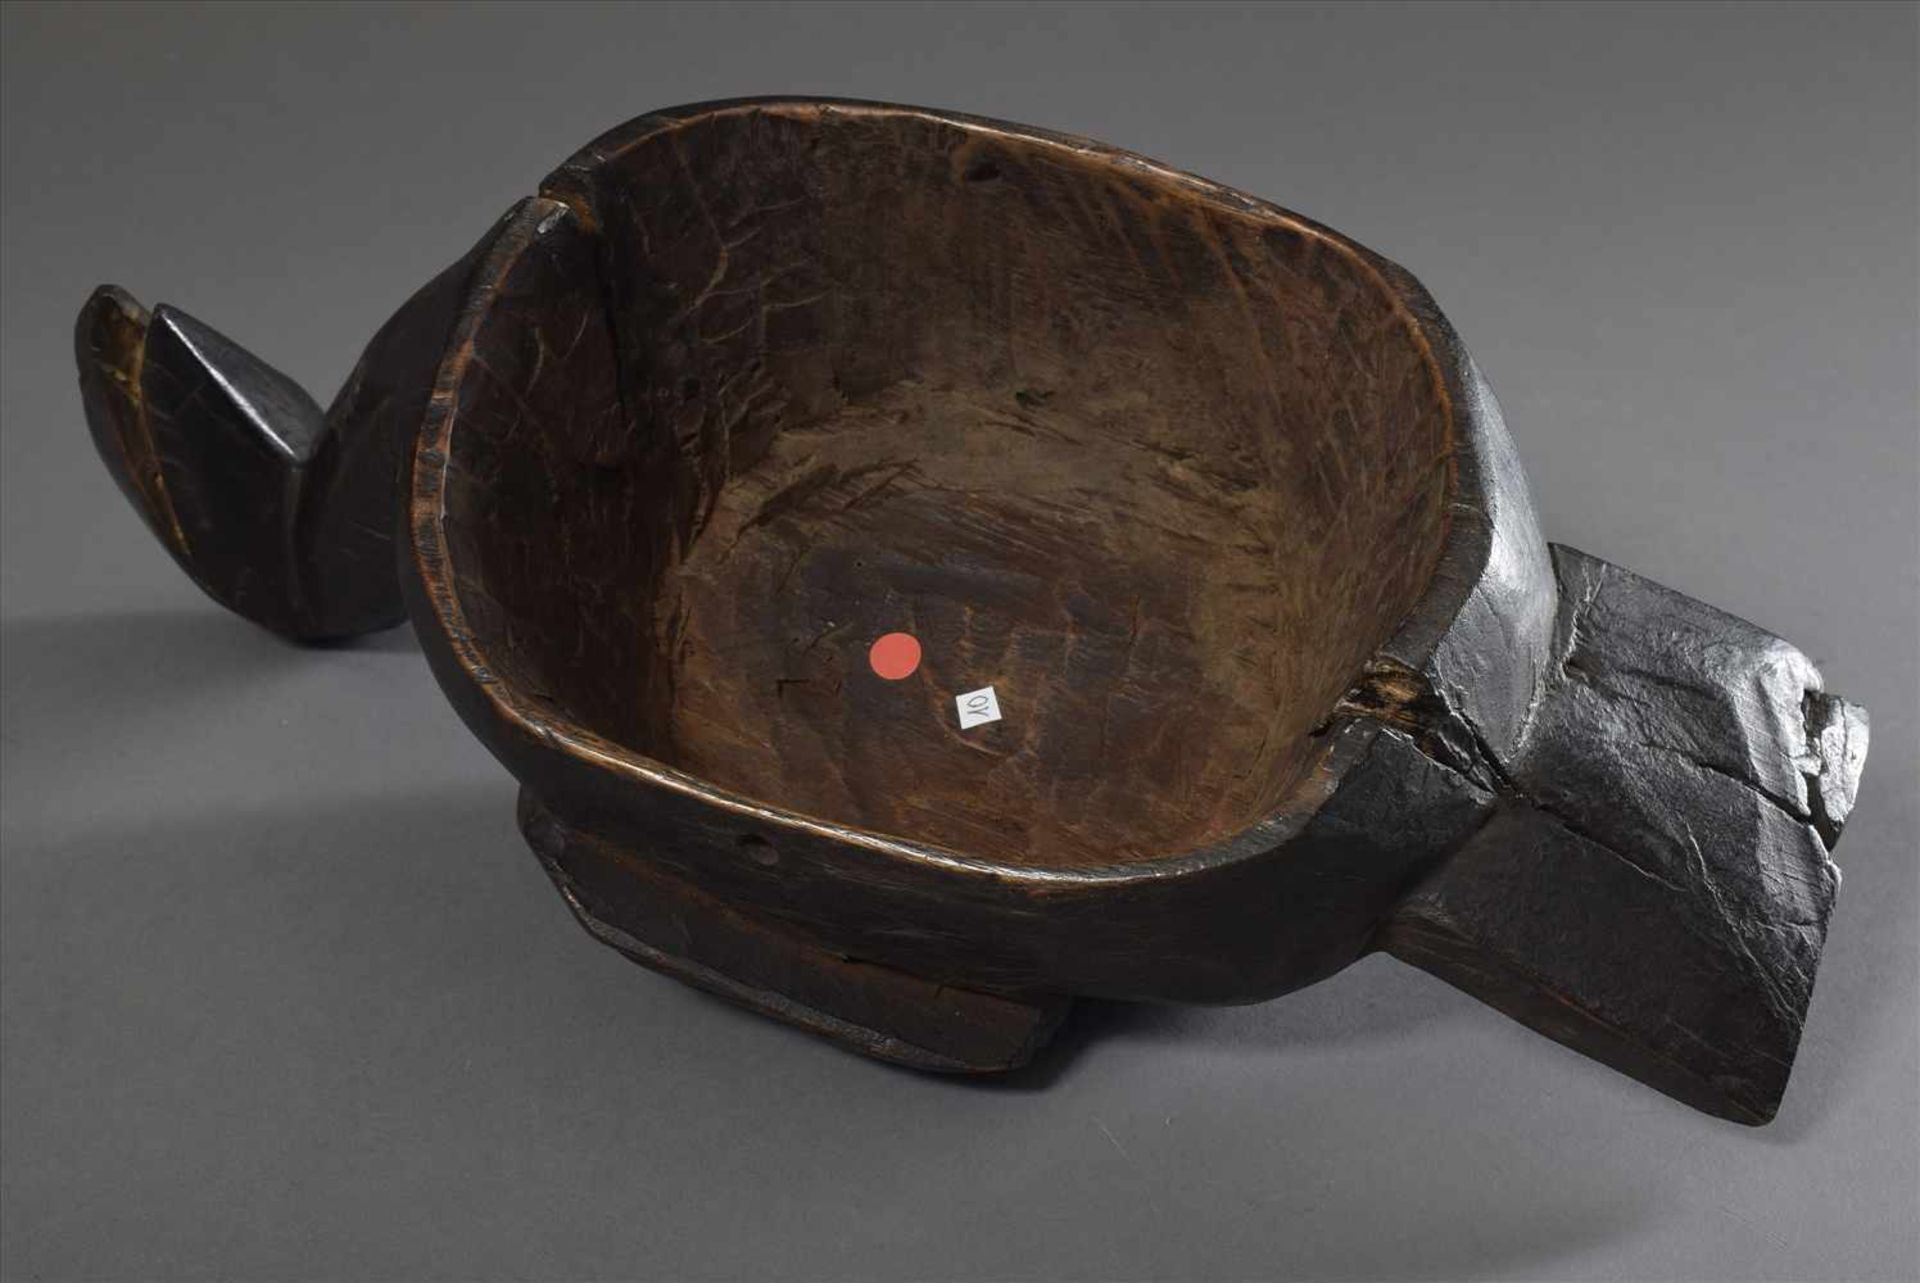 Aufsatz-/Helmmaske der Kosi/Bamileke in Form einer Ente oder Pelikan, Holz, dunkel gefärbt, - Image 3 of 4